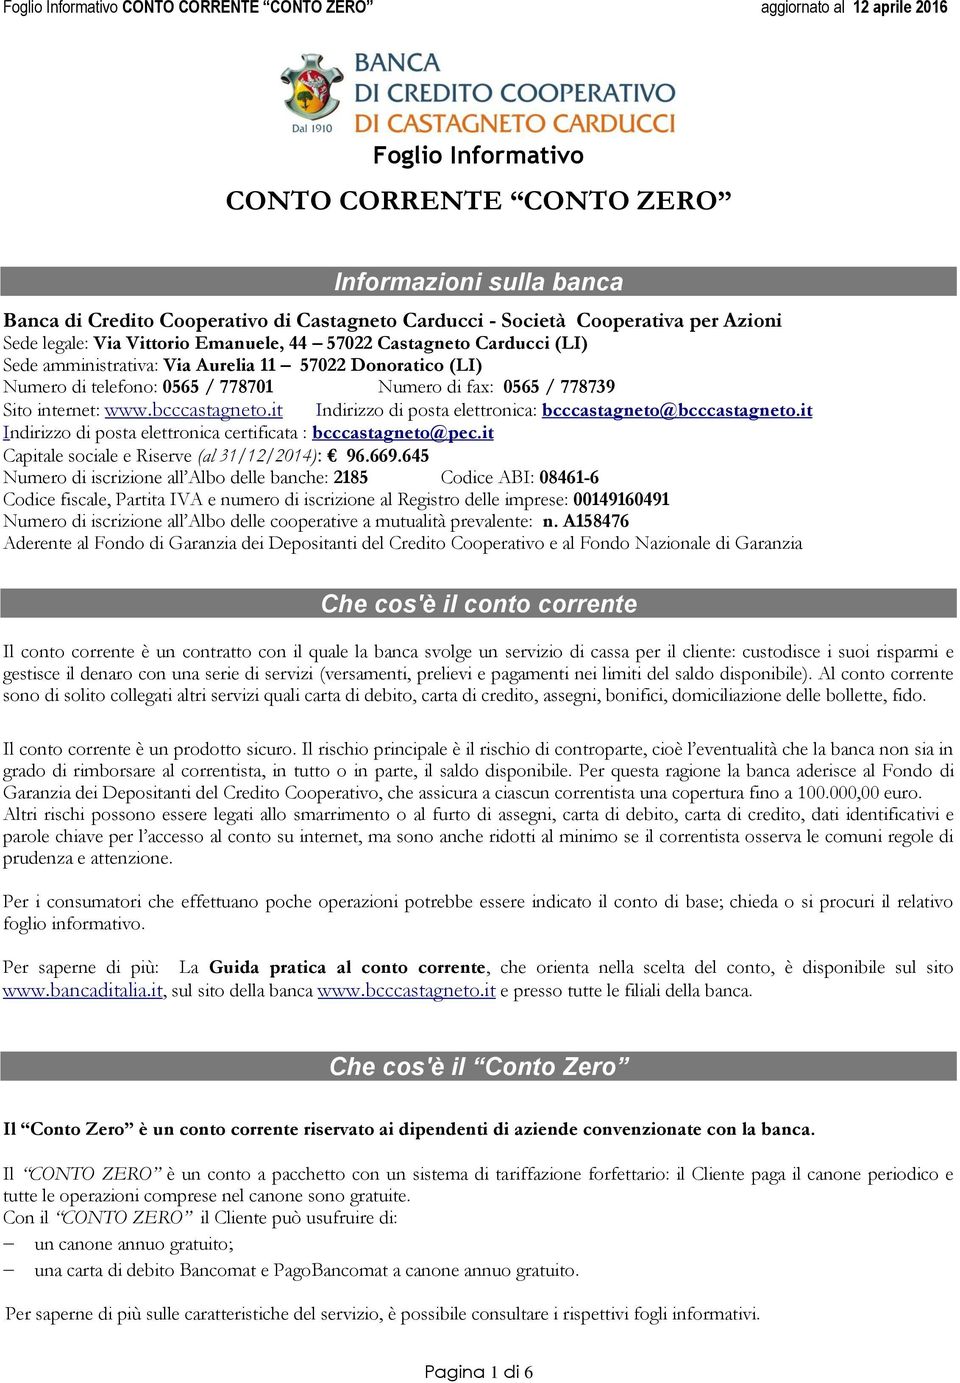 it Indirizzo di posta elettronica: bcccastagneto@bcccastagneto.it Indirizzo di posta elettronica certificata : bcccastagneto@pec.it Capitale sociale e Riserve (al 31/12/2014): 96.669.